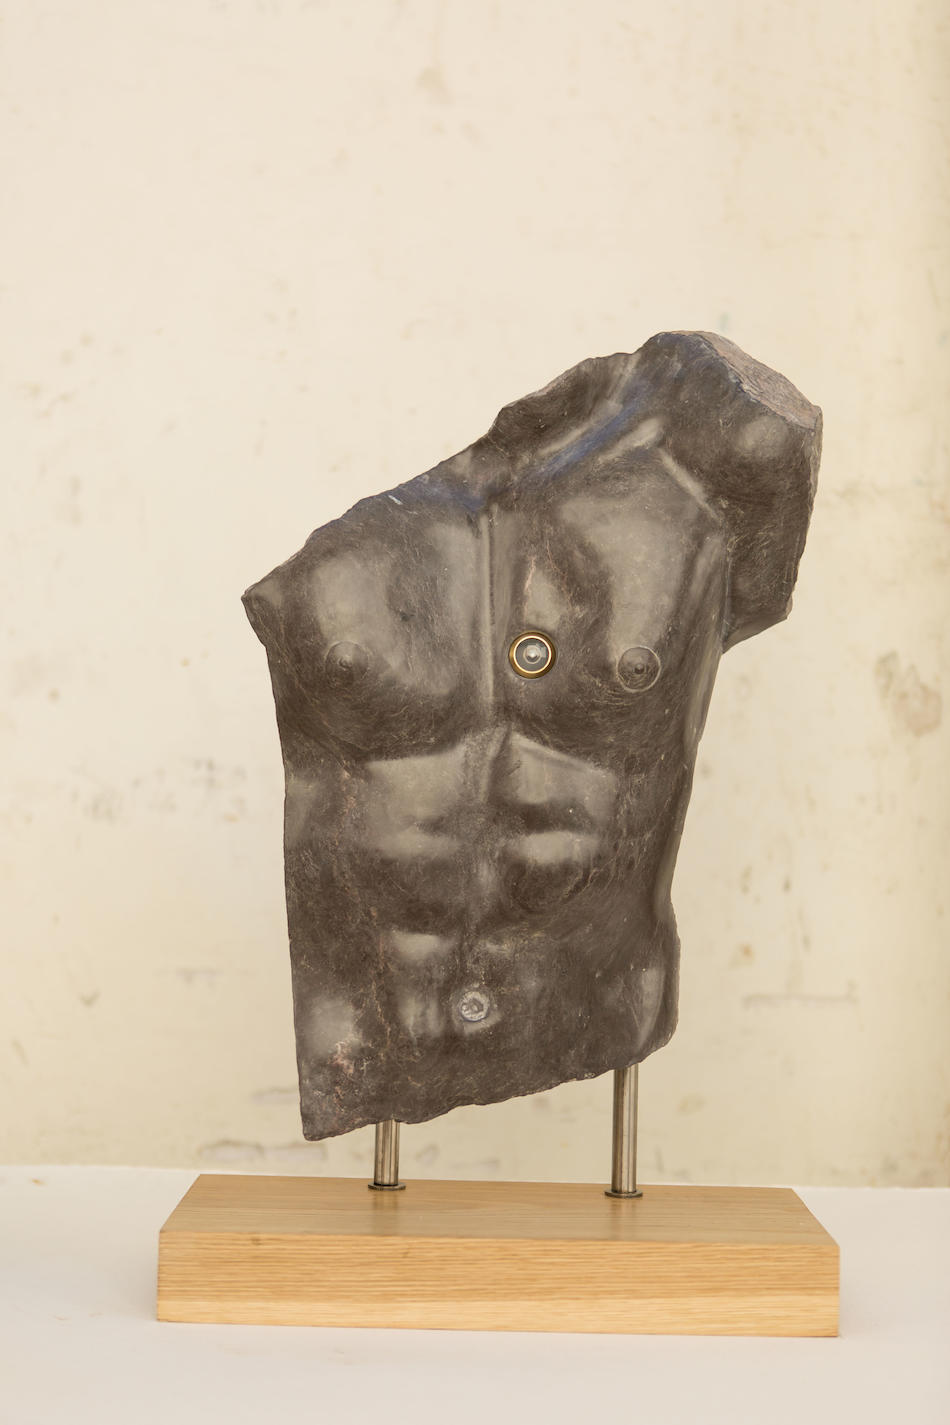 2n premi en escultura de l'ArTardor 2020. David Collantes (La mirilla del cor)